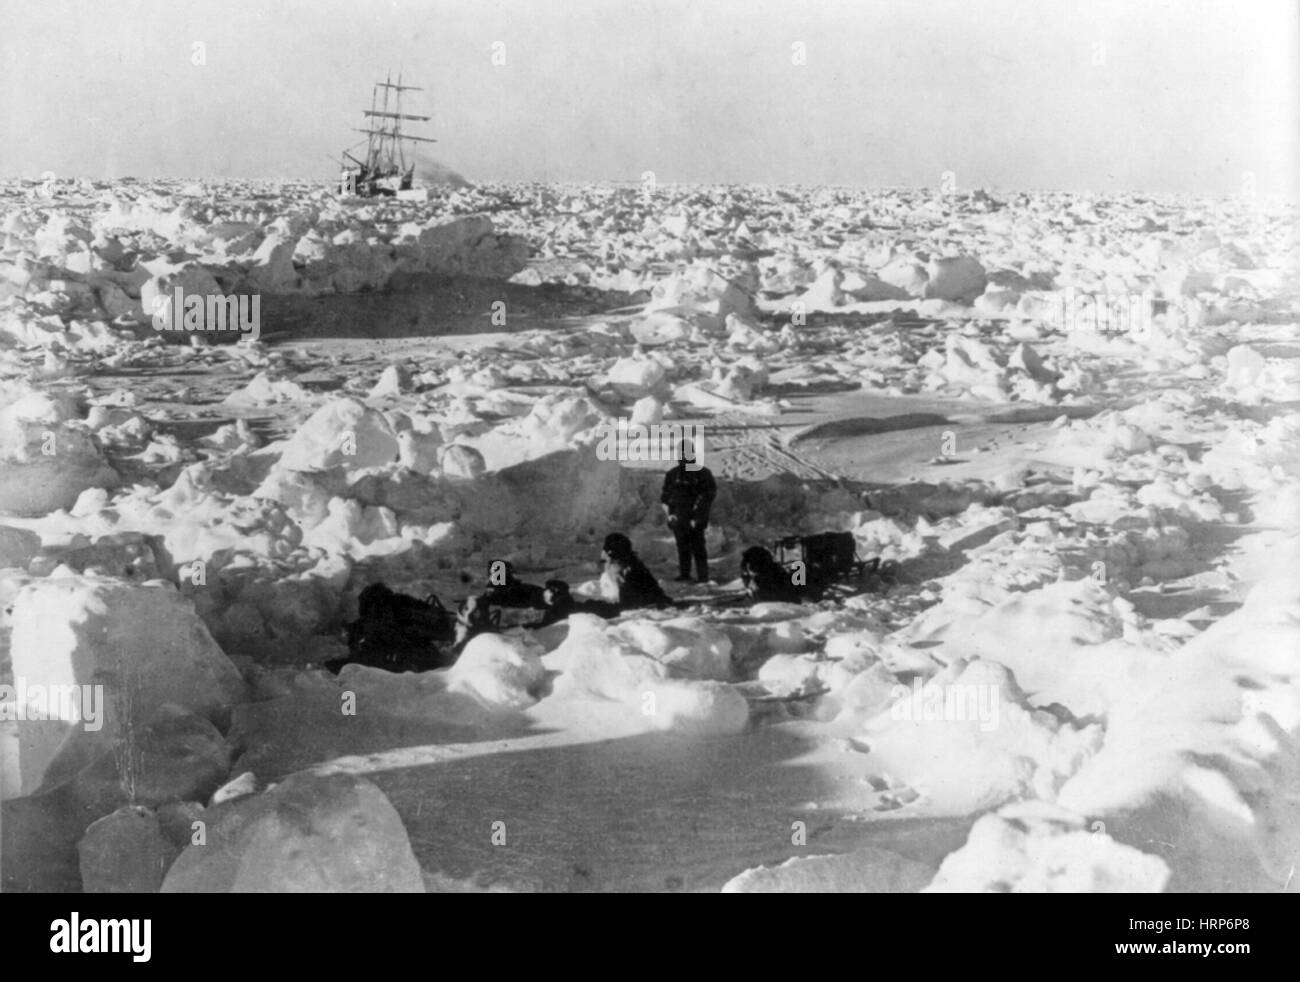 L'Endurance de Shackleton pris dans la banquise, 1915 Banque D'Images